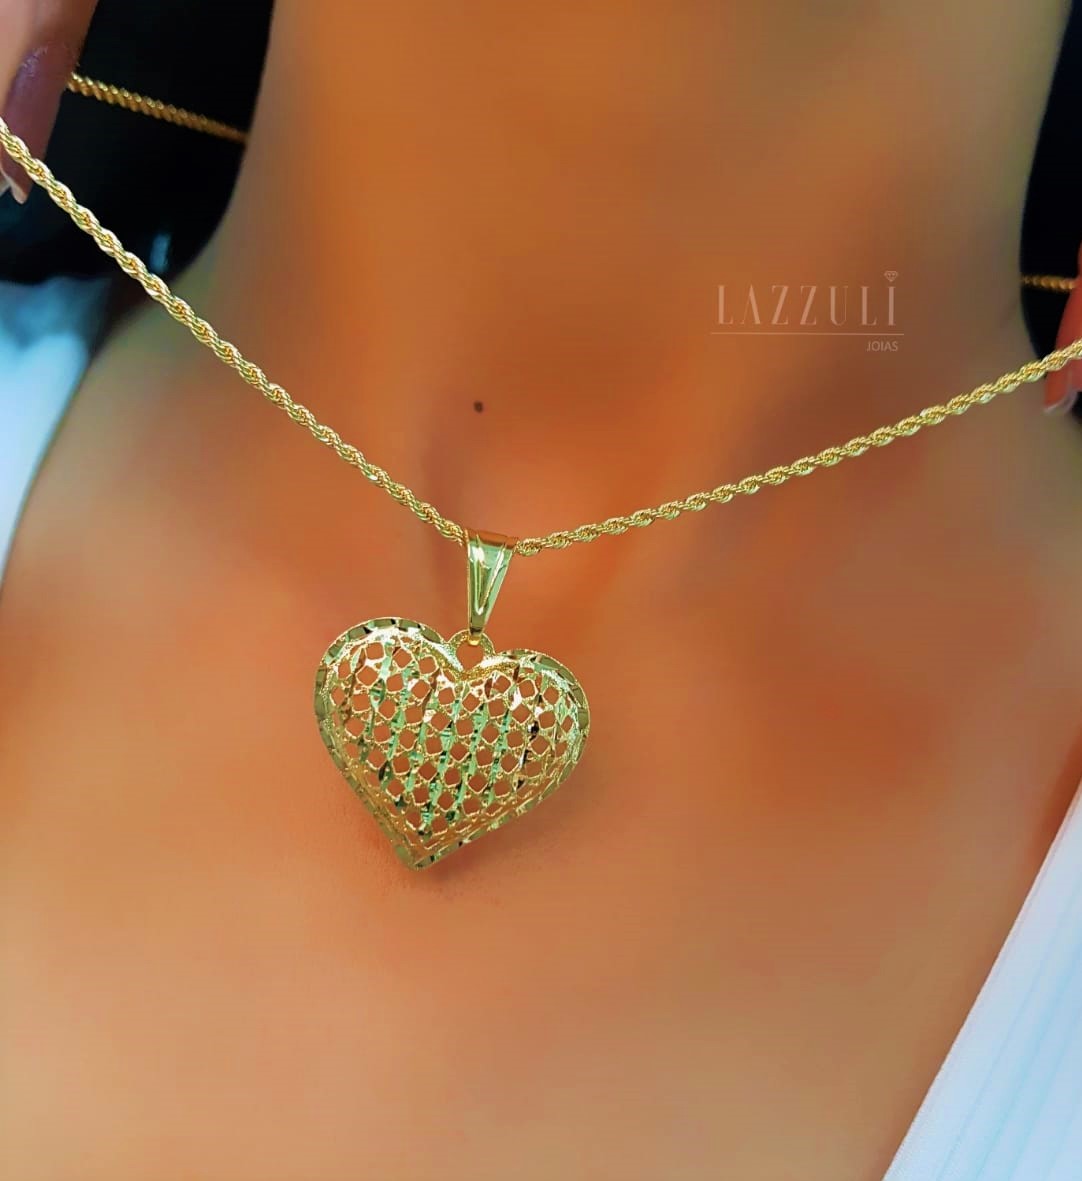 Colar Elo Baiano com Pingente Coração Diamantado Banhado em Ouro18k   - Lazzuli Joias